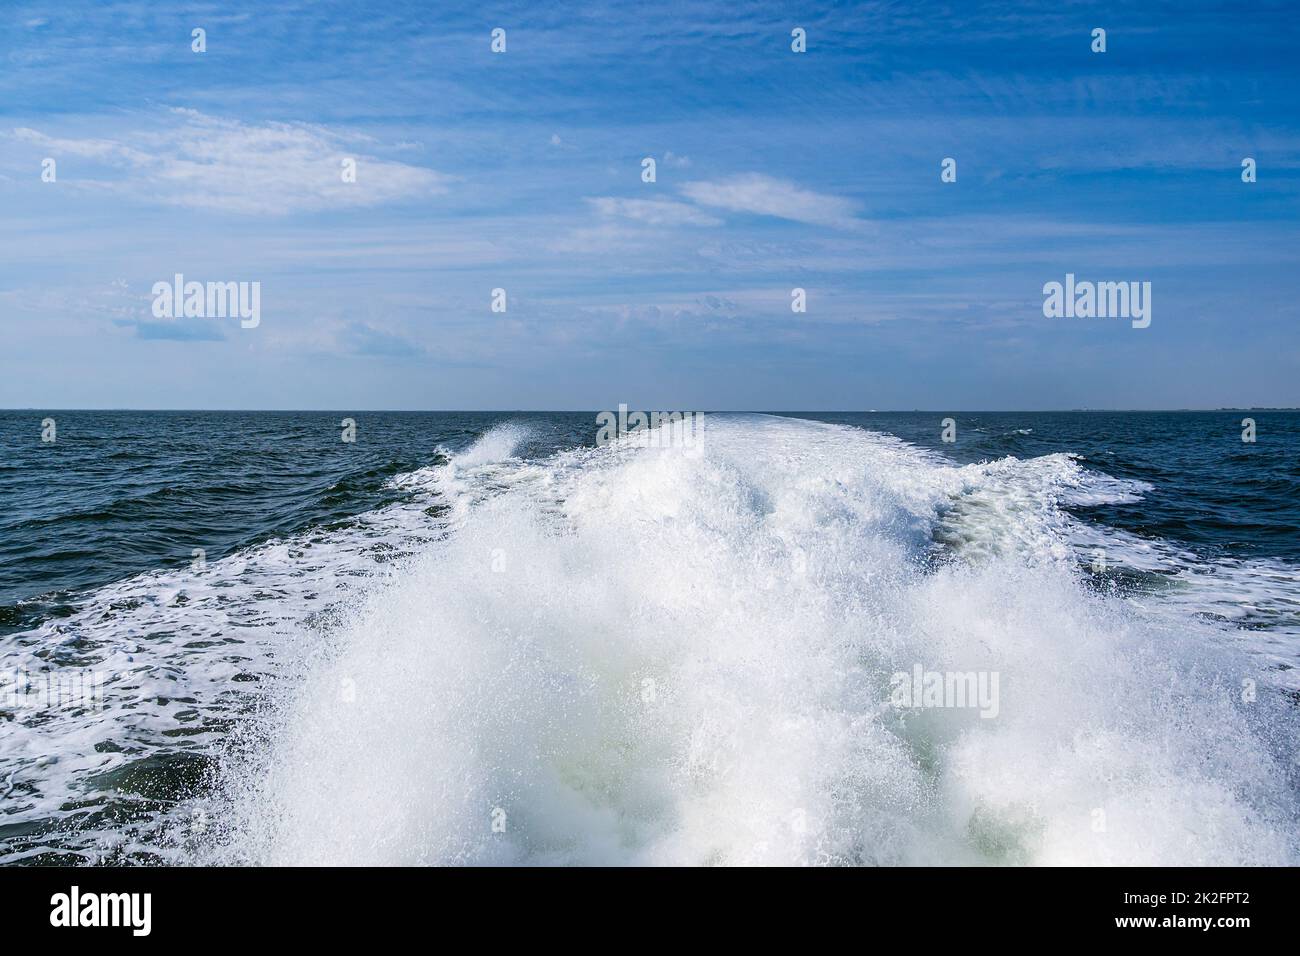 Stern onda di una nave sul Mare del Nord Foto Stock